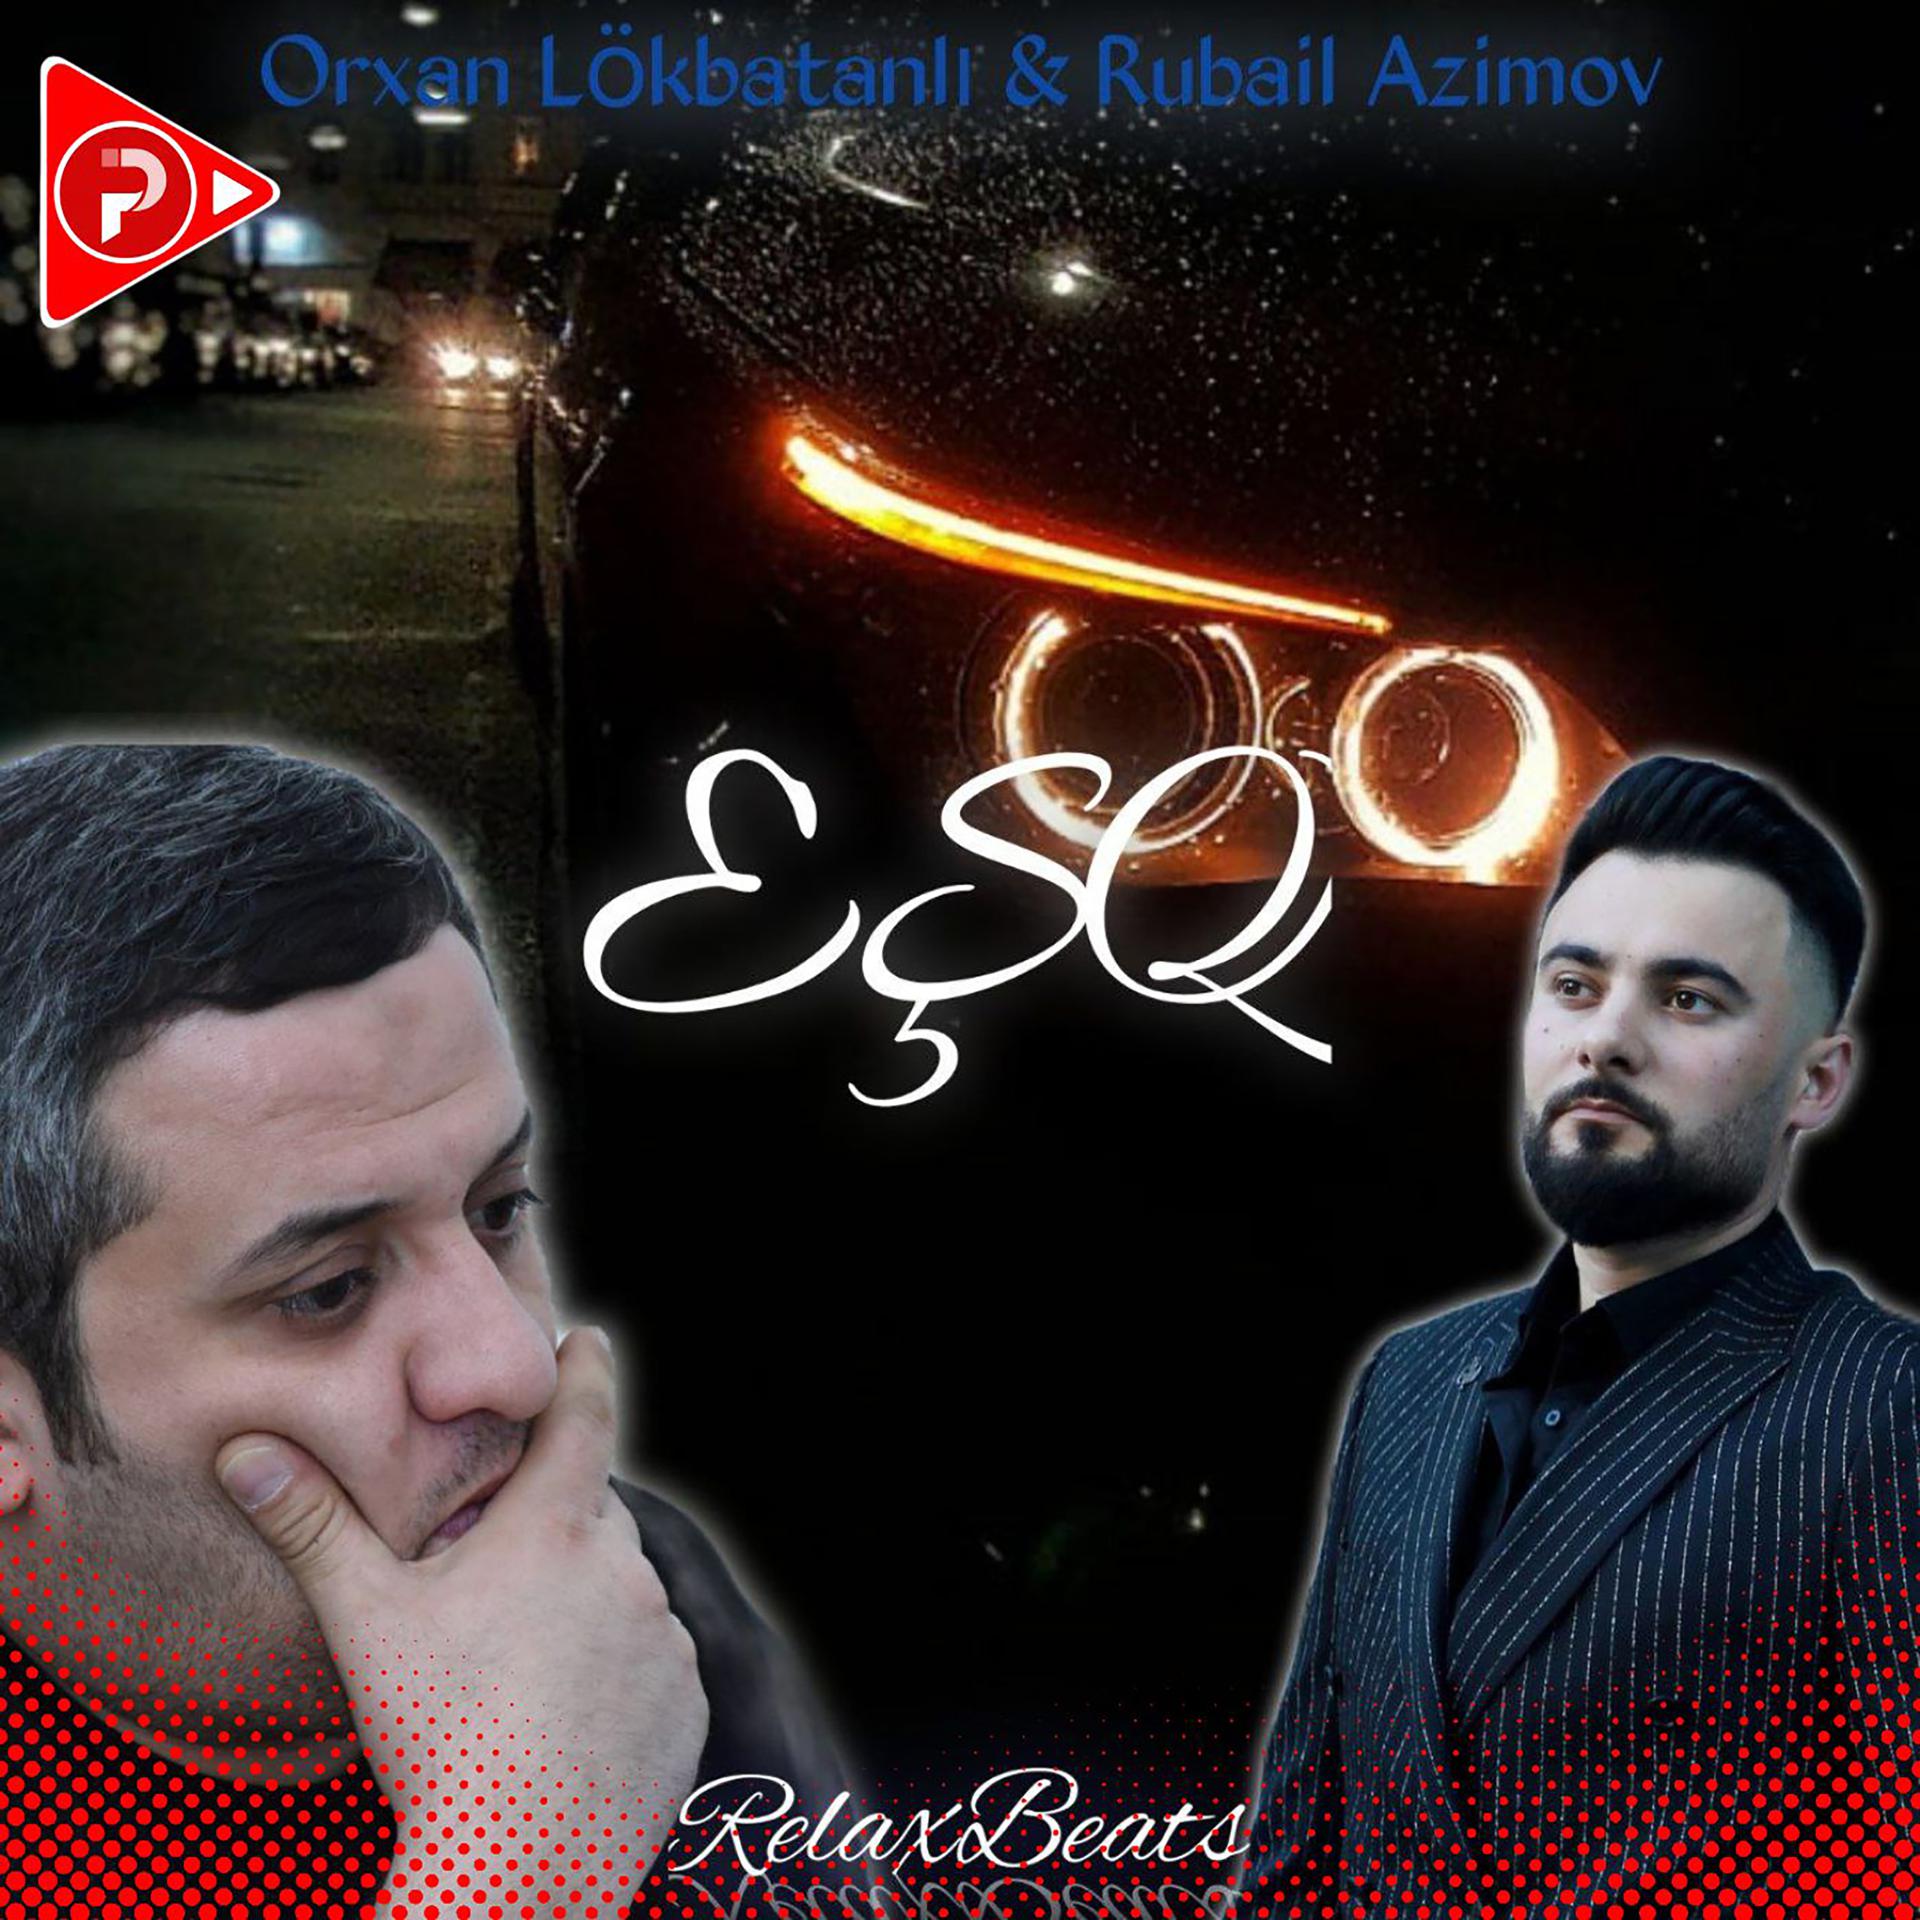 Постер альбома Eşq